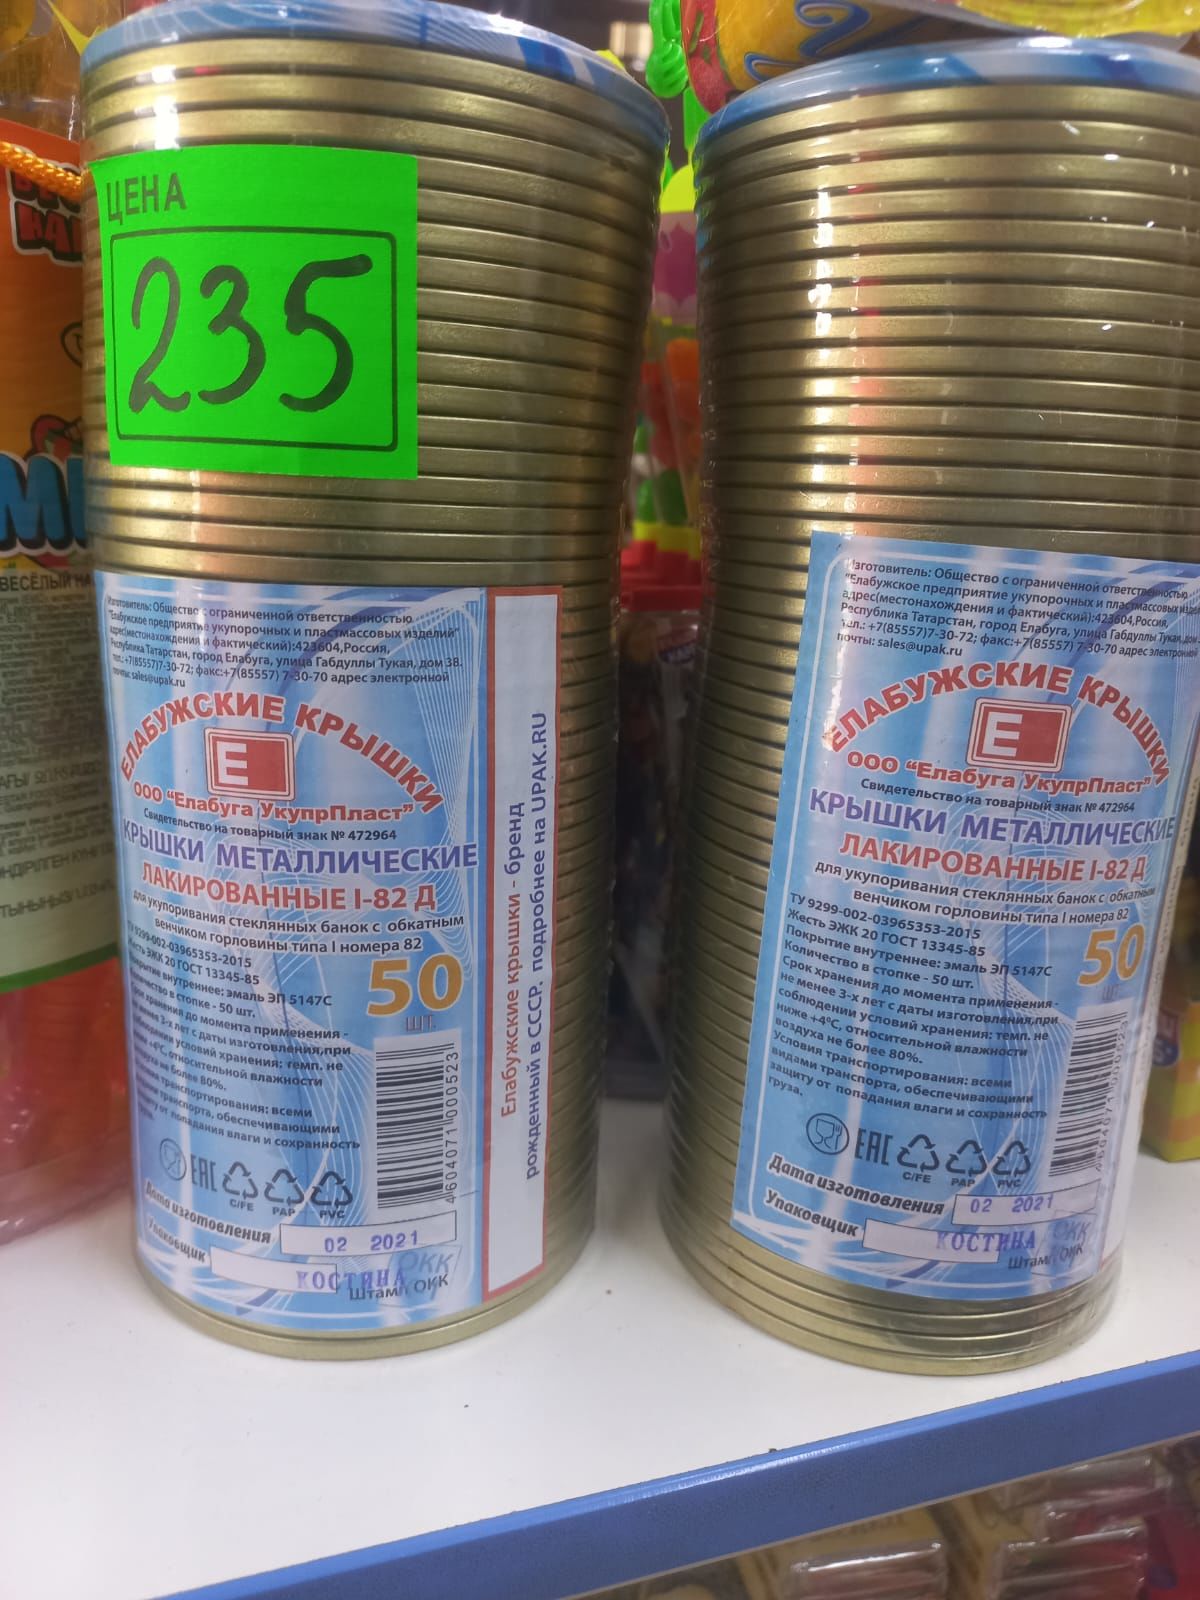 В магазине Рубин всегда низкие цены. Сахарный песок 1 кг. - 61руб.80 коп.